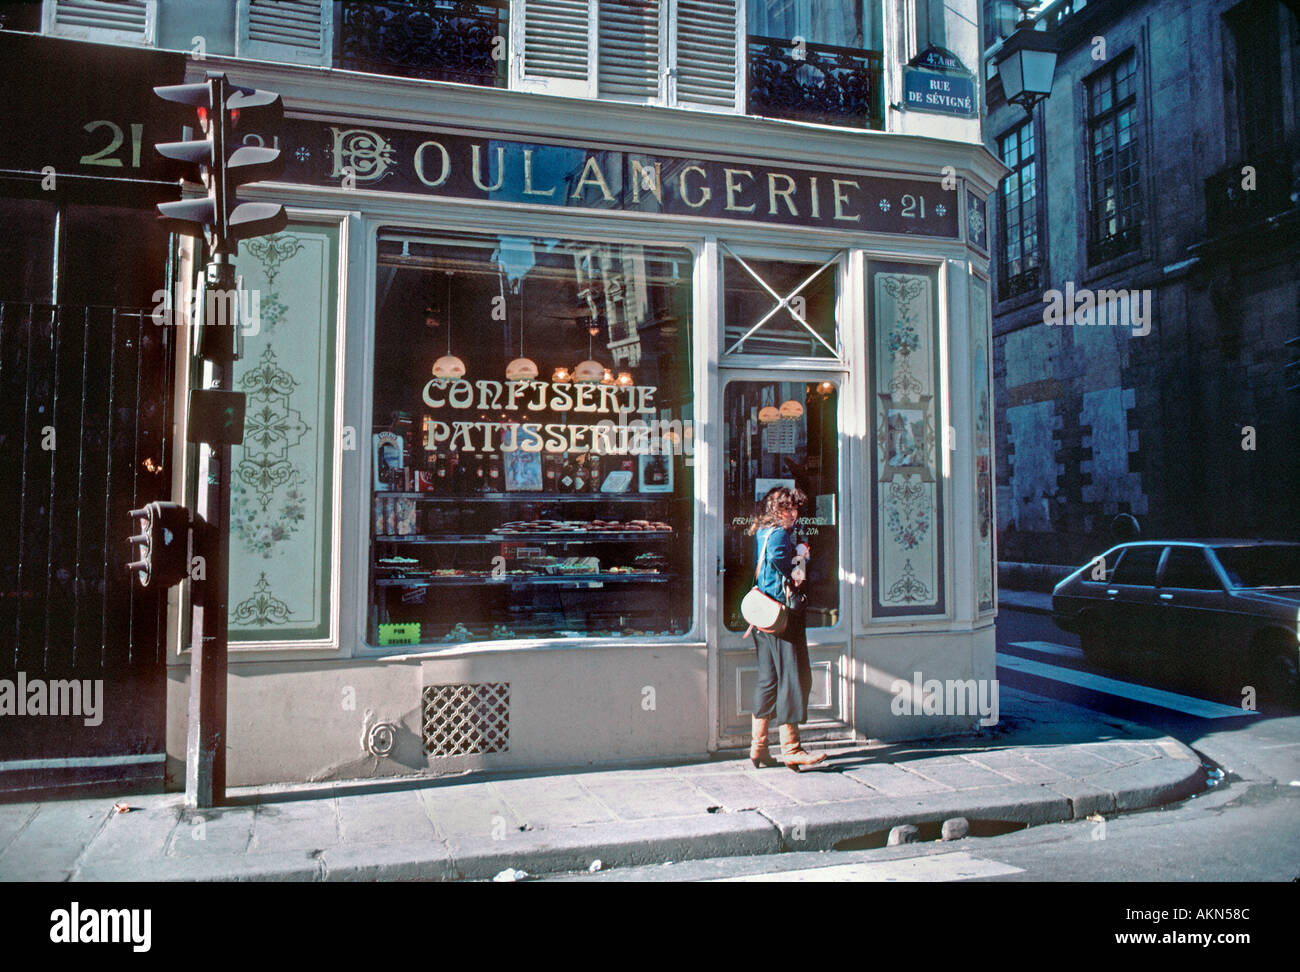 Paris France boulangerie française 'boulangerie Pattiserie' panneau extérieur Vintage, avant les rénovations années 1980 entreprise, ancienne boulangerie française Banque D'Images